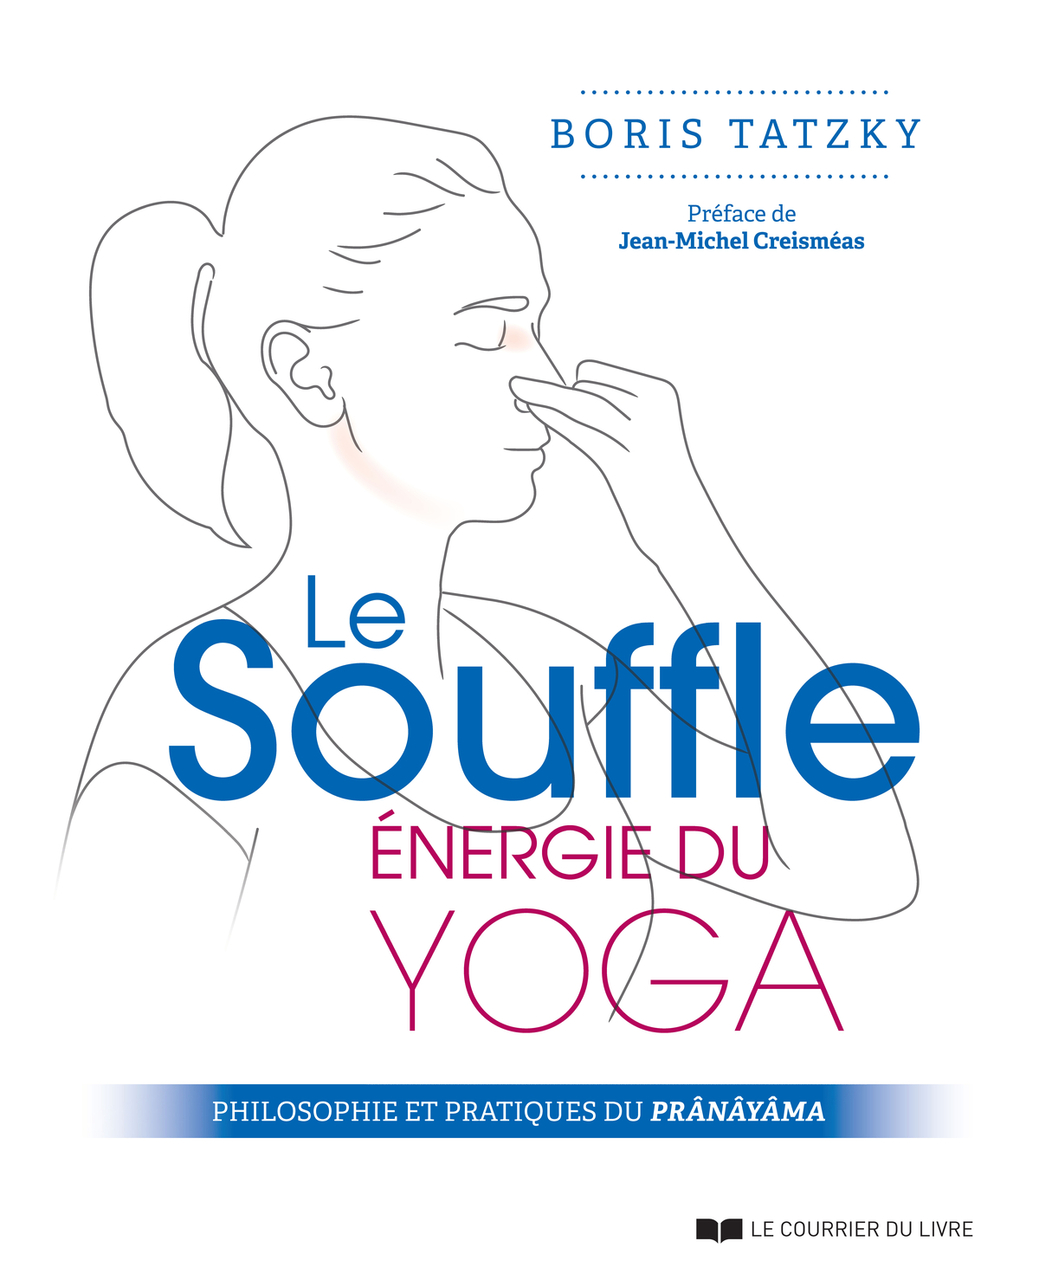 “Le Souffle, énergie du yoga” par Boris Tatzky